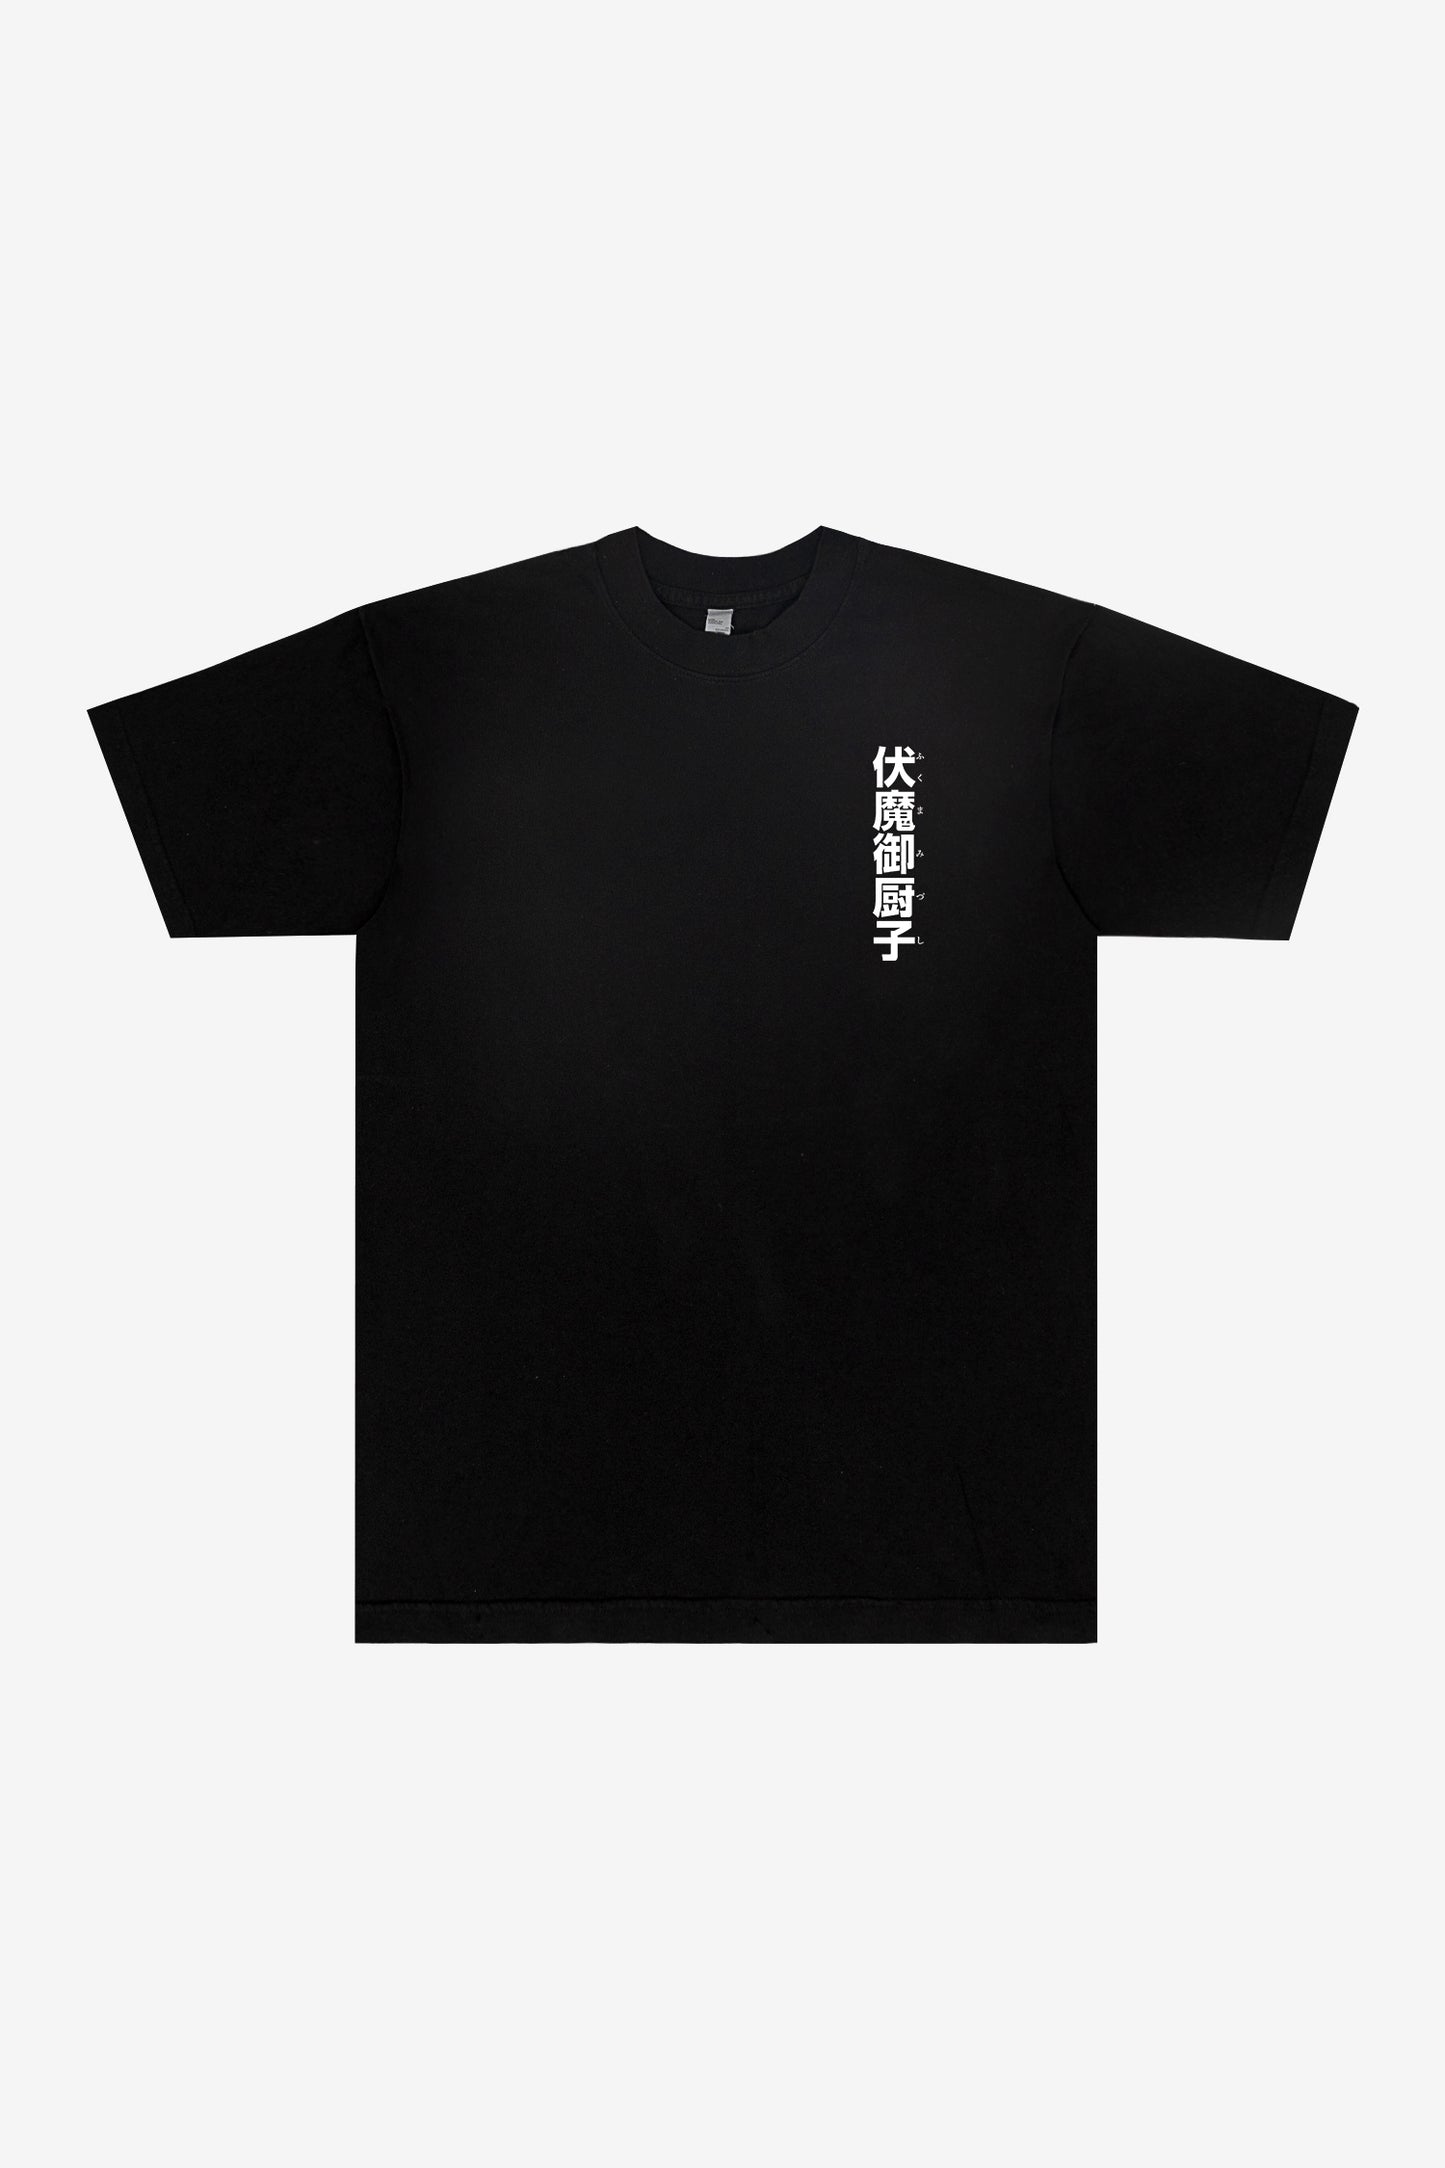 Sukuna-Domänenerweiterungs-T-Shirt